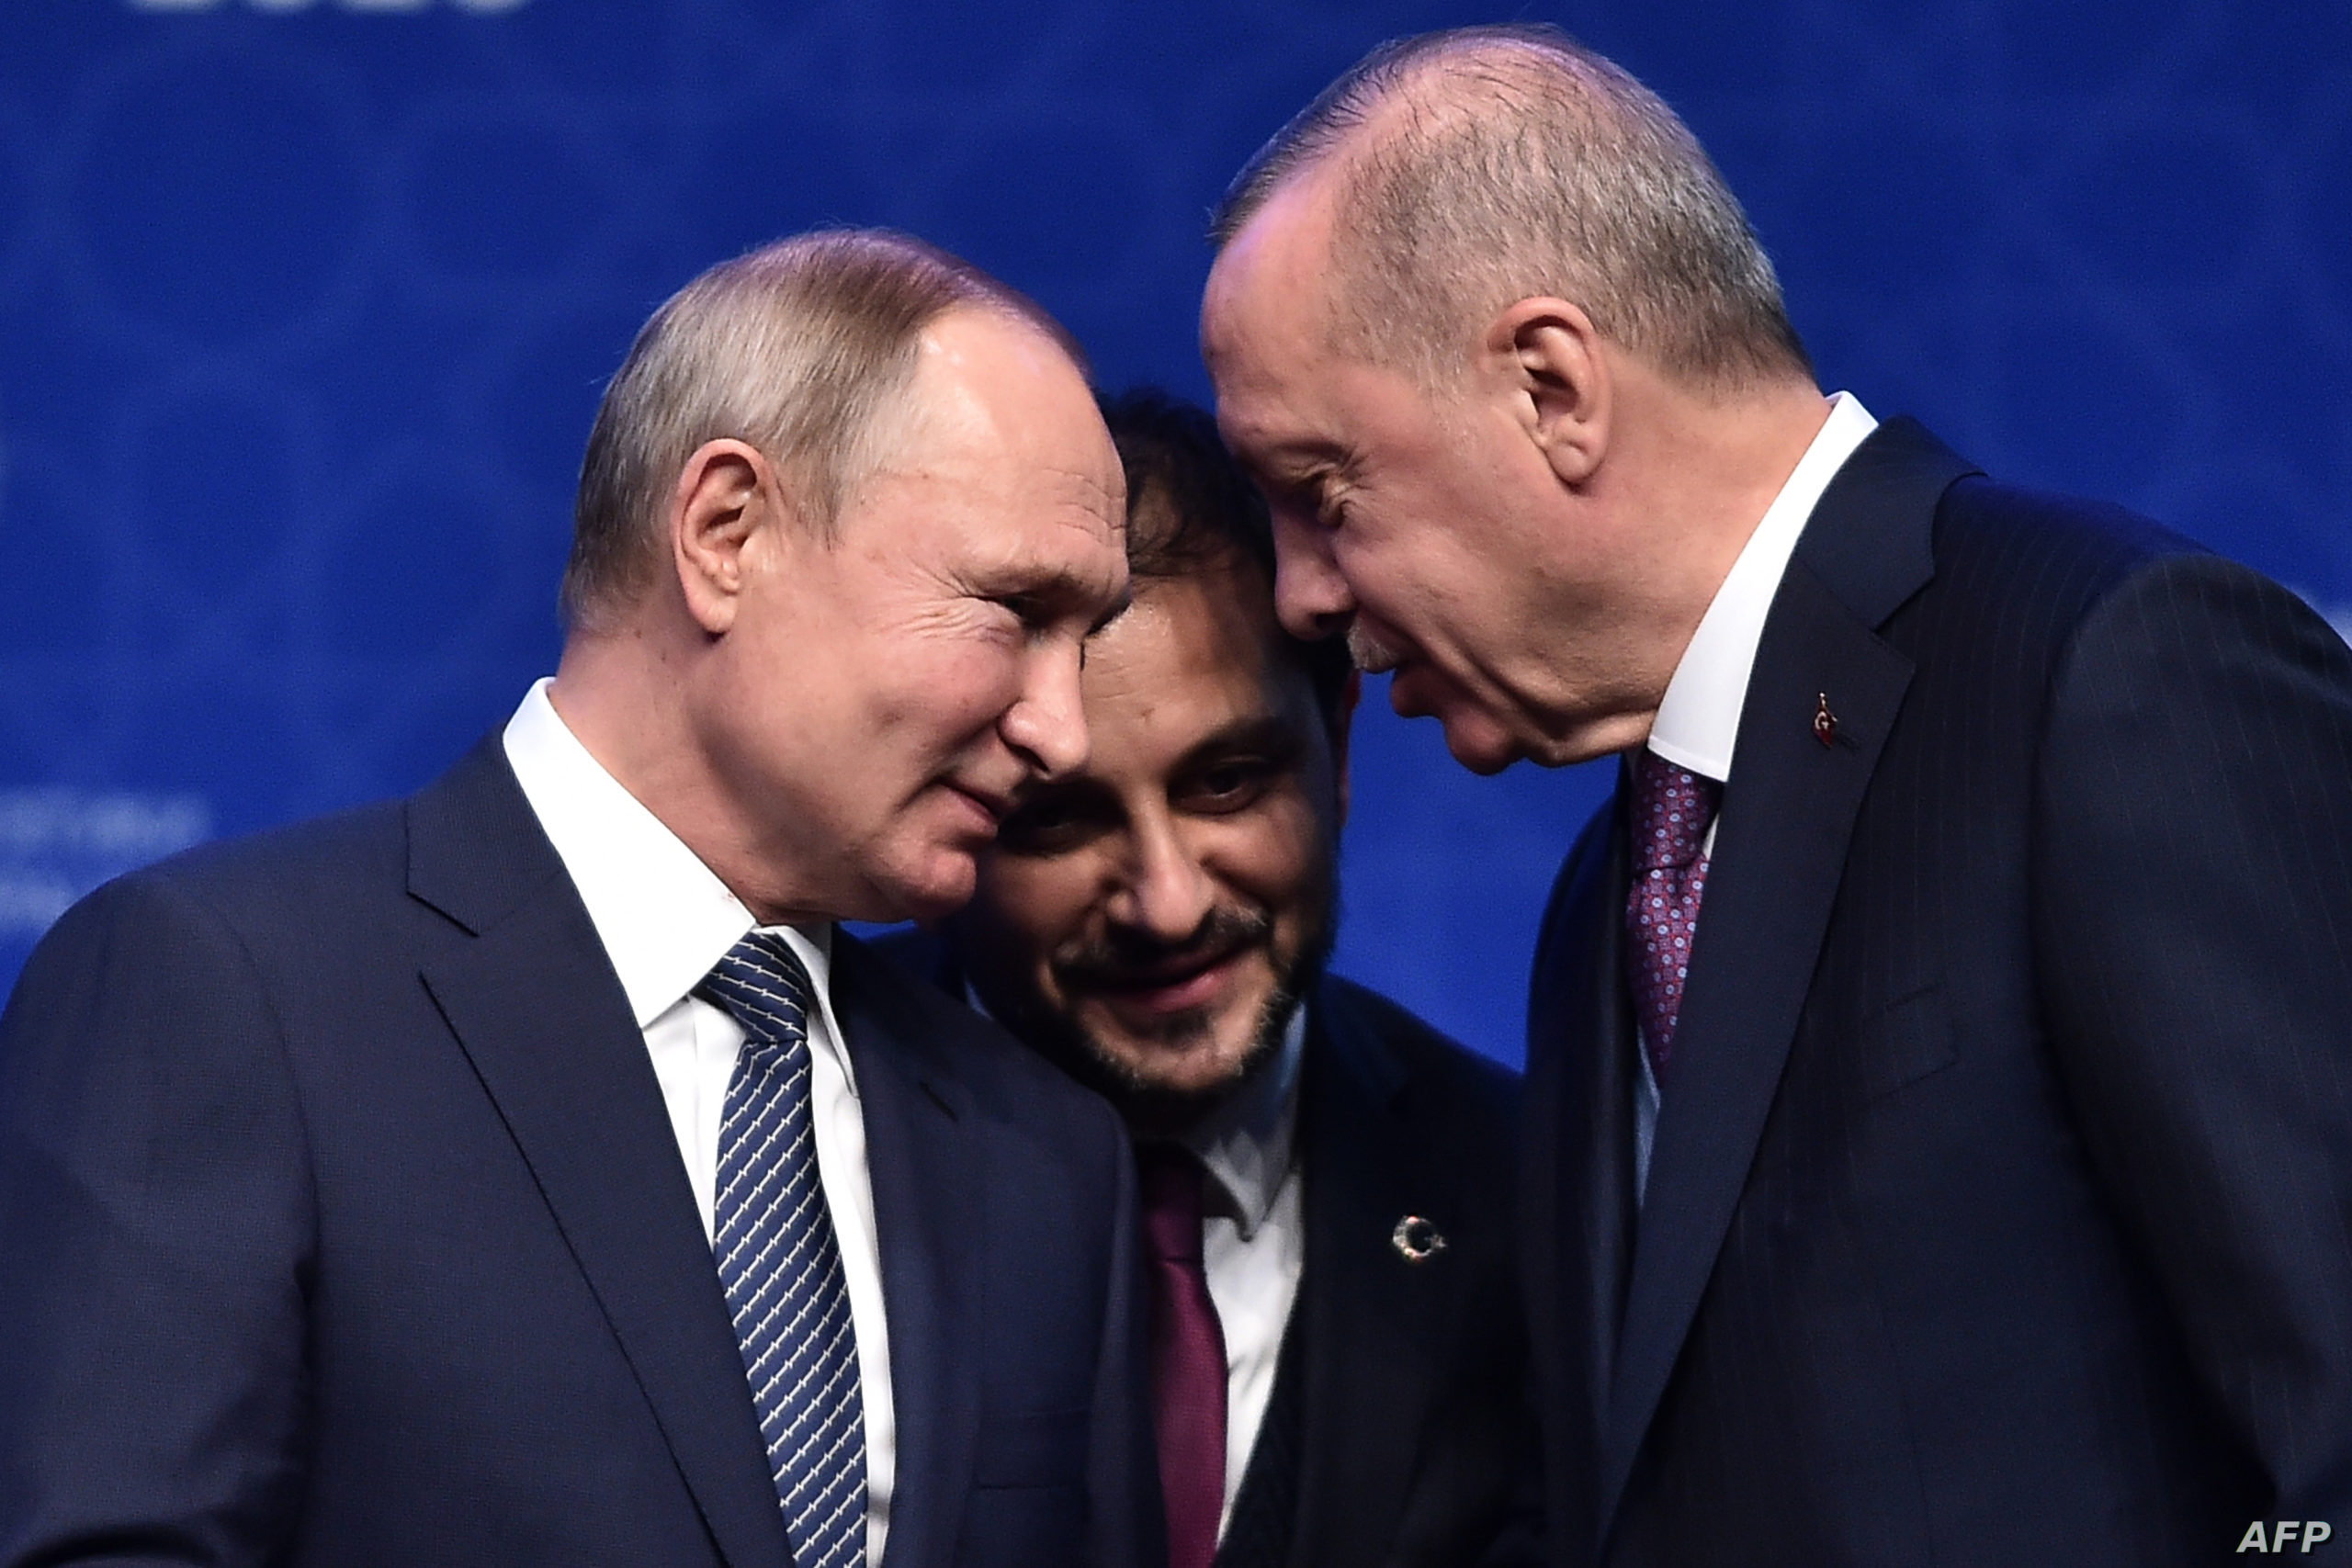 الاحتمالات المتوقعة بعد فشل الاجتماع الروسي التركي